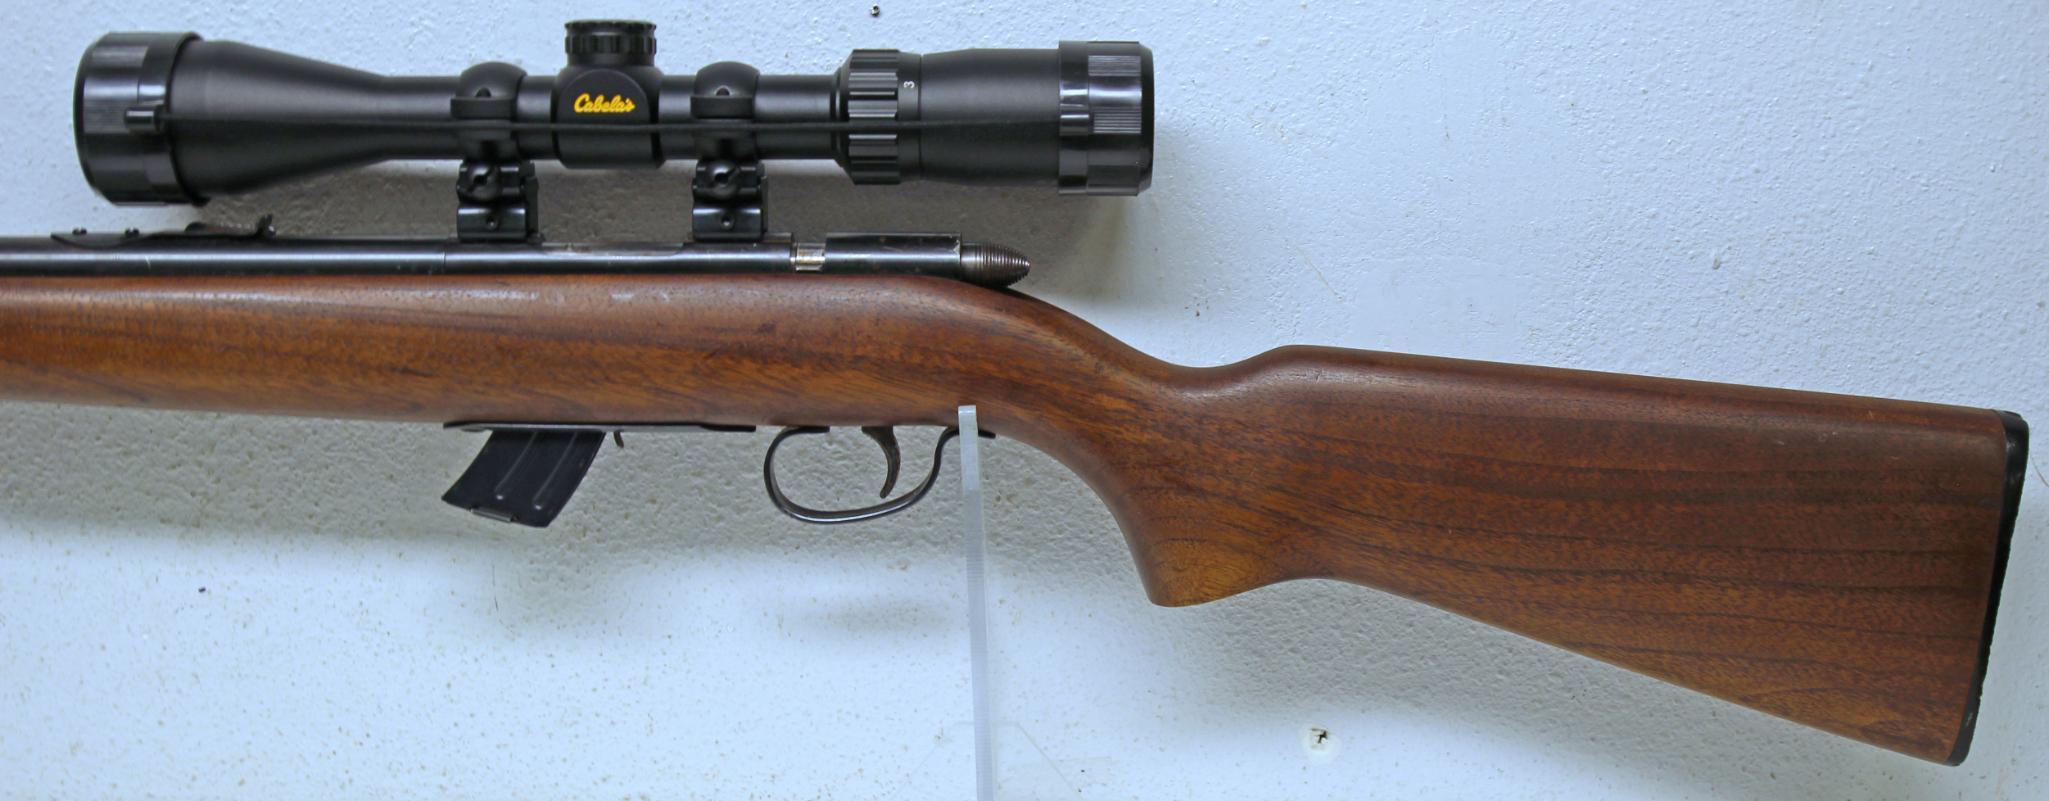 Remington Model 511 Score Master .22 S,L,LR Clip Fed Bolt Action Rifle with Cabelas 3x9x40 Scope